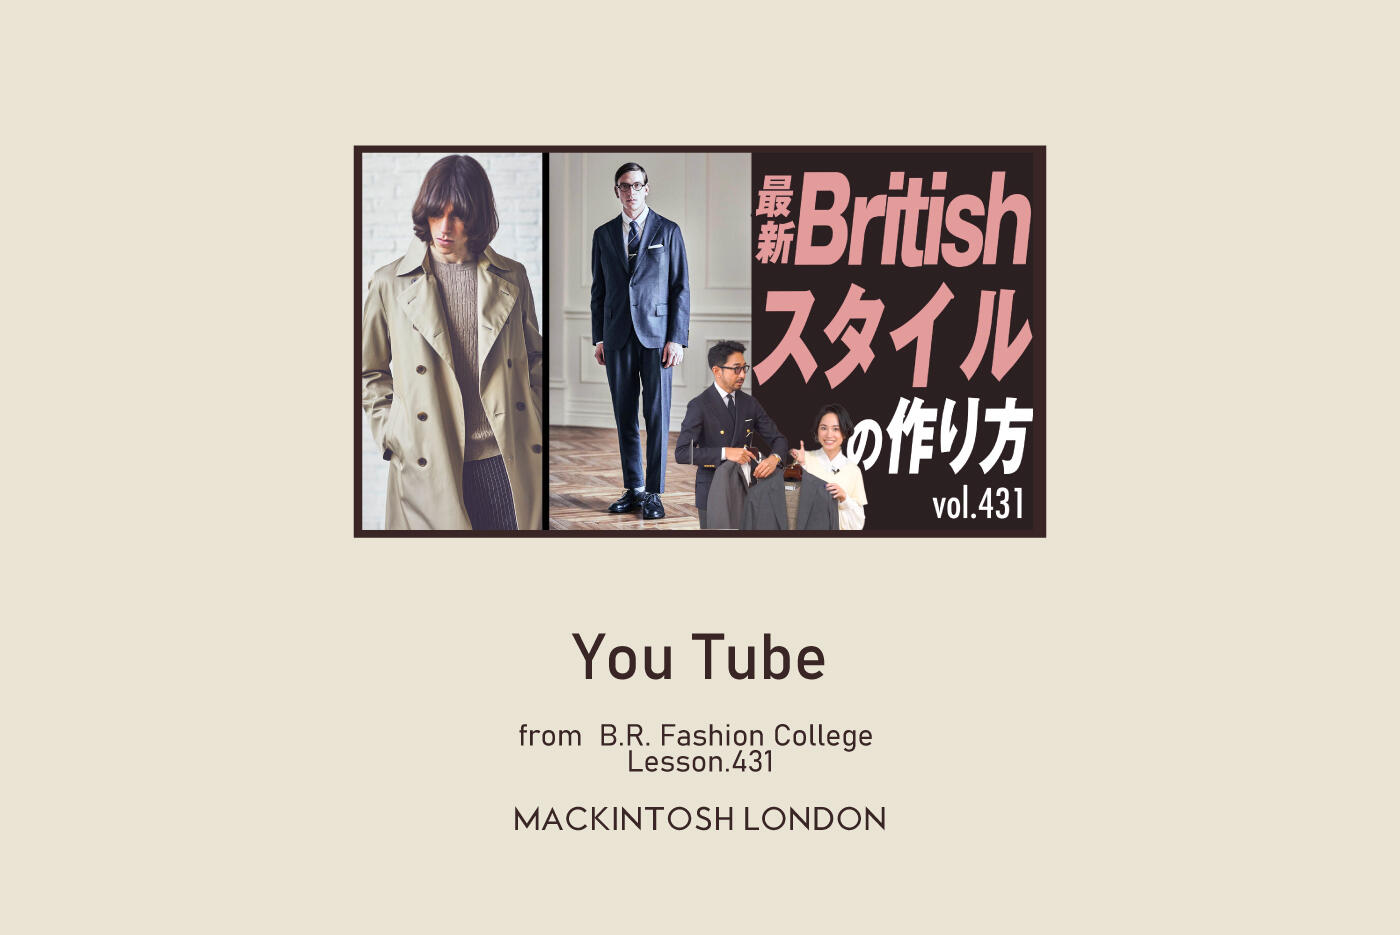 ファッションディレクター干場義雅氏が講師の人気YouTubeチャンネル「B.R.CHANNEL Fashion College」でMACKINTOSH LONDONが初登場